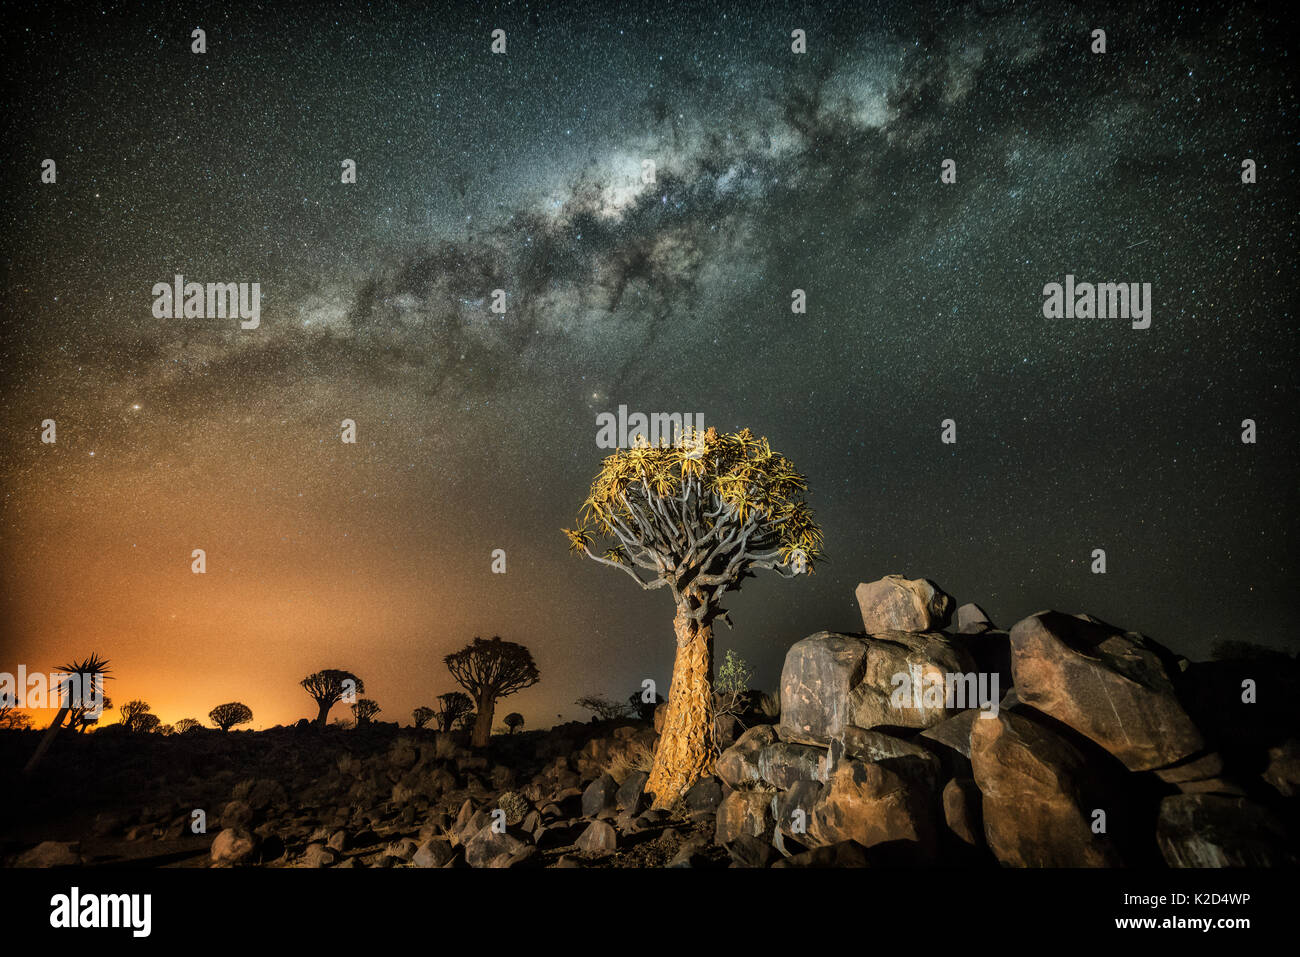 Quiver Tree (Aloe dichotoma) avec la Voie Lactée dans la nuit, et la pollution lumineuse de la ville au loin, Keetmanshoop, la Namibie. Couleurs accentuées en numérique. Banque D'Images